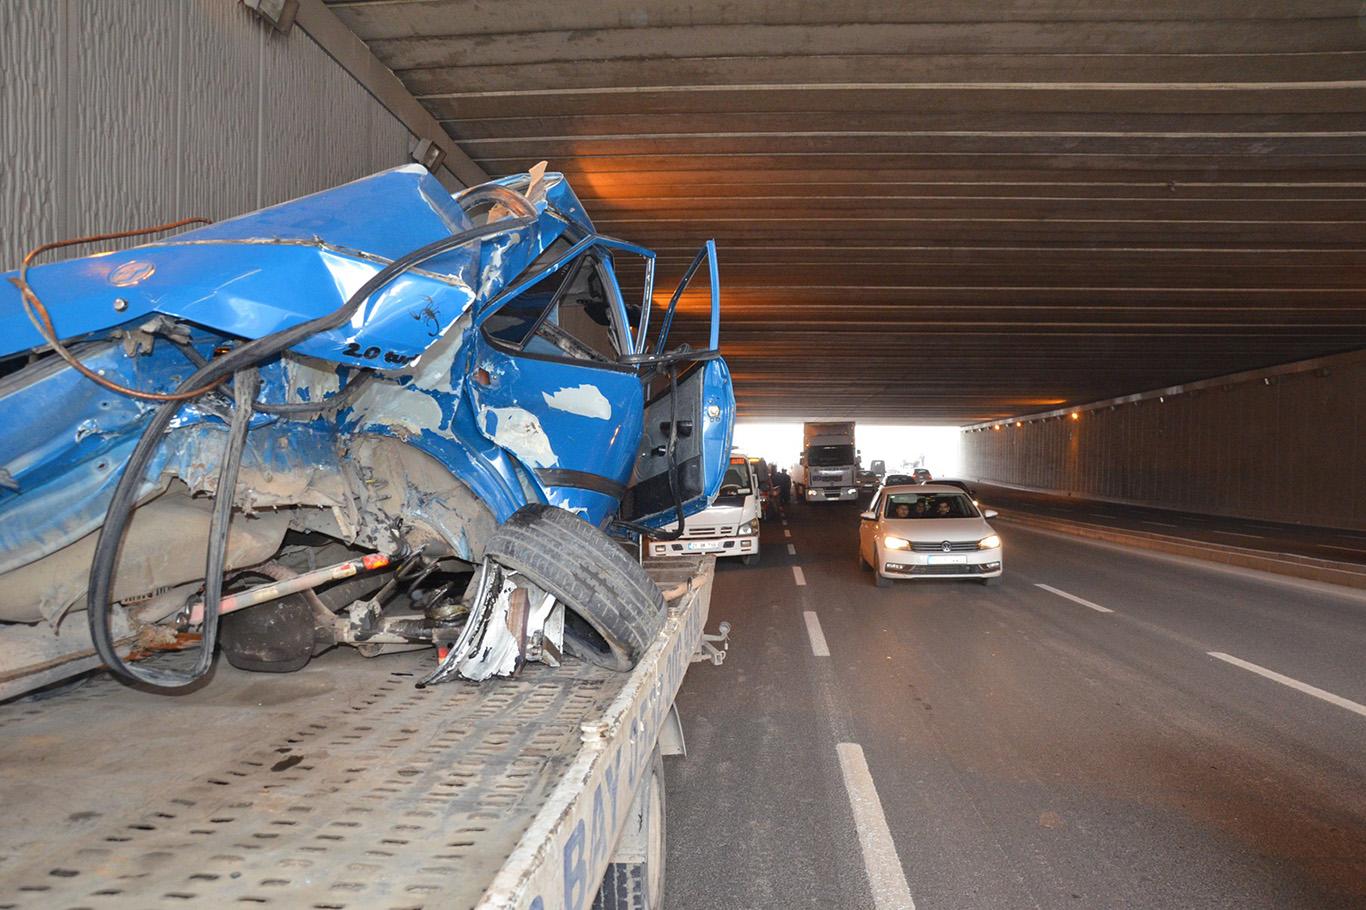 Diyarbakır’da trafik kazası: 3 yaralı